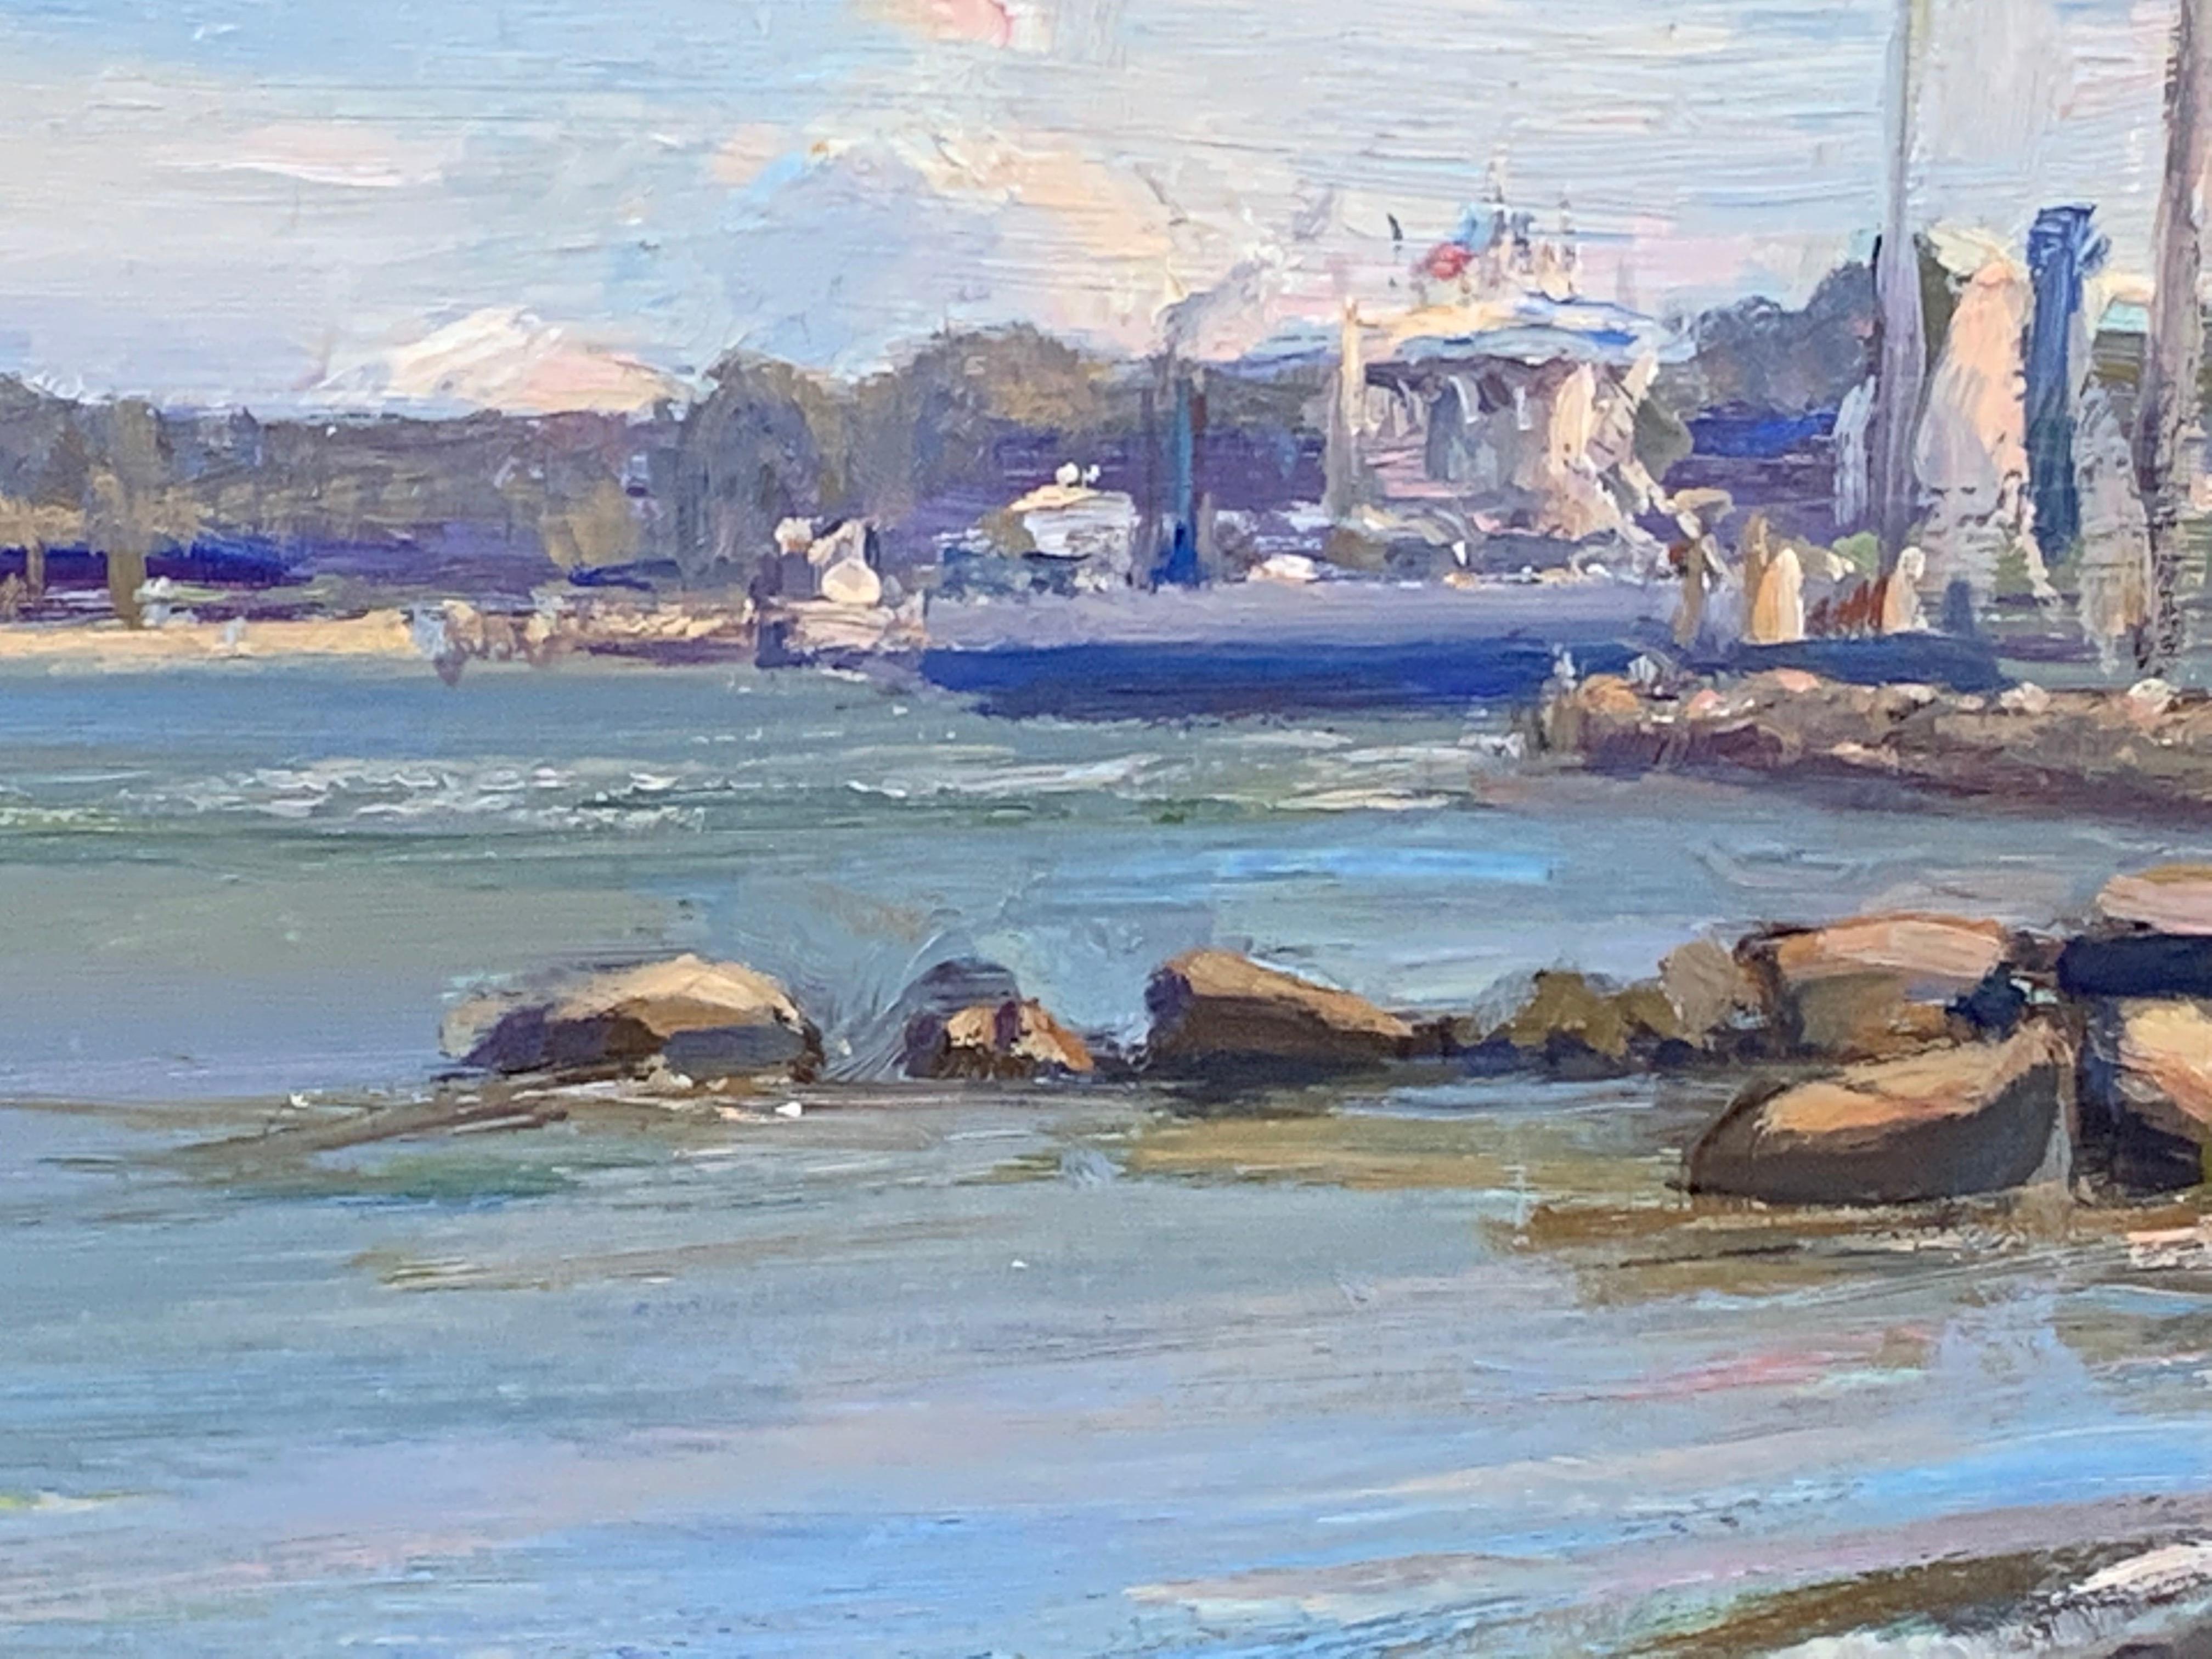 Nach dem Leben gemalt, eine subtile und farbenfrohe Meereslandschaft. Die South Ferry fährt über die Peconic Bay, von North Haven, Sag Harbor, nach Shelter Island. Ein bescheidener Ort in den berühmten Hamptons von New York. 


Unterzeichnet: Angel